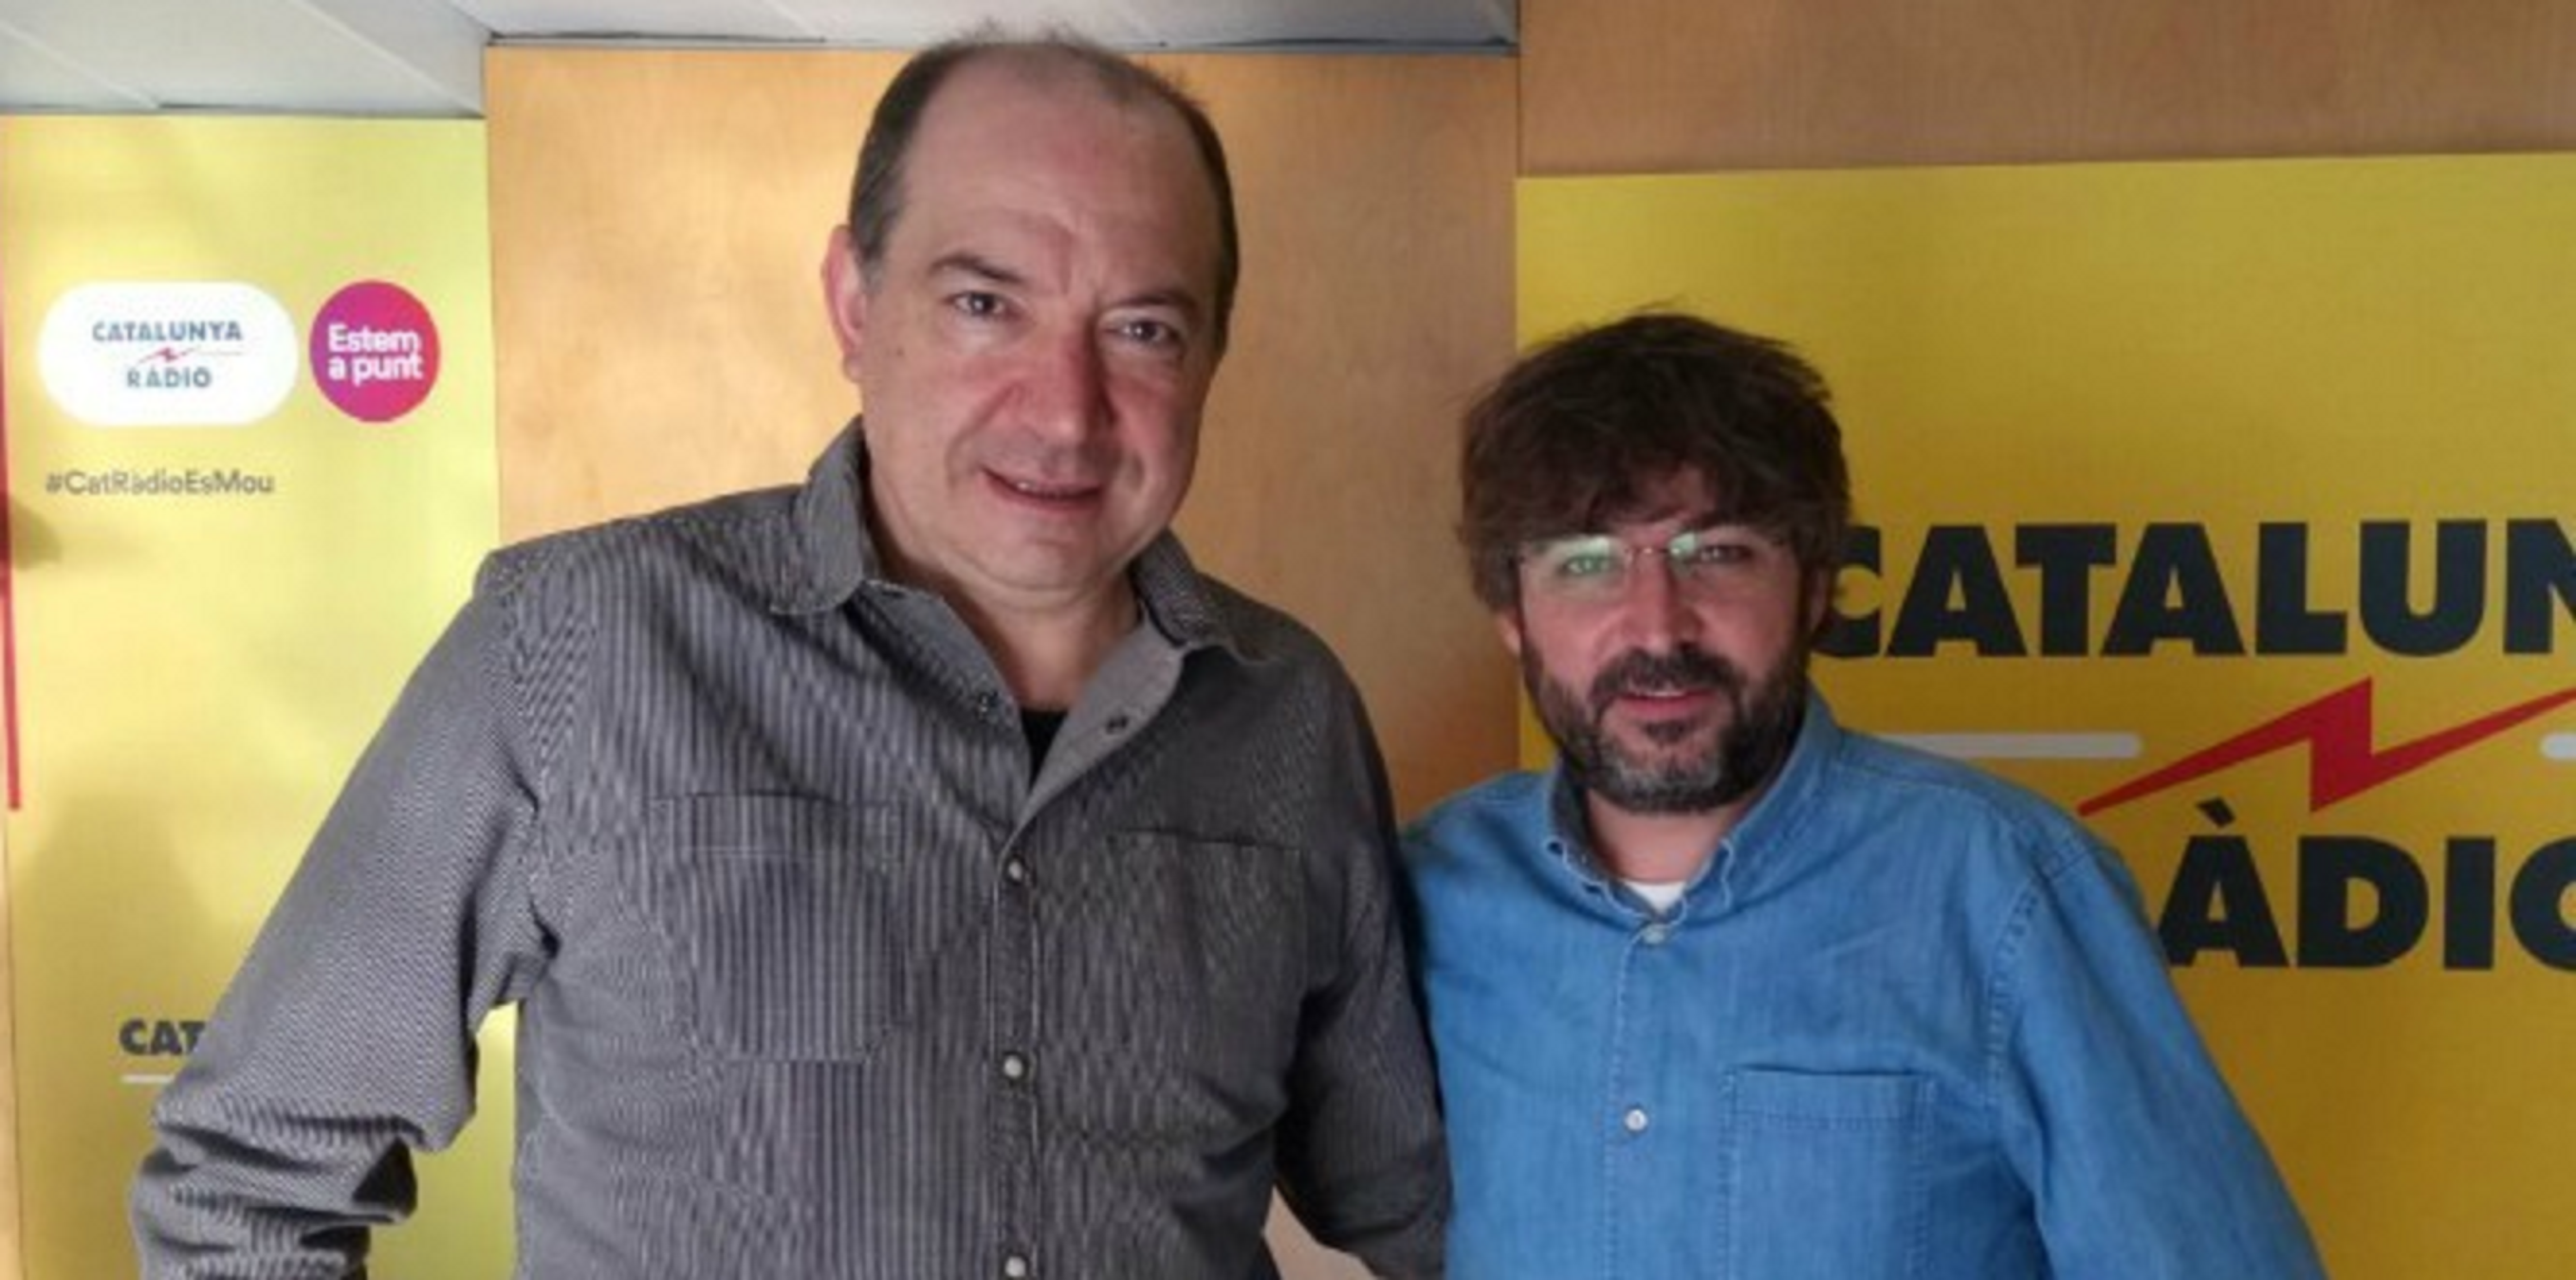 Sanchis qüestiona Évole per l'entrevista a Felipe González on criticava TV3